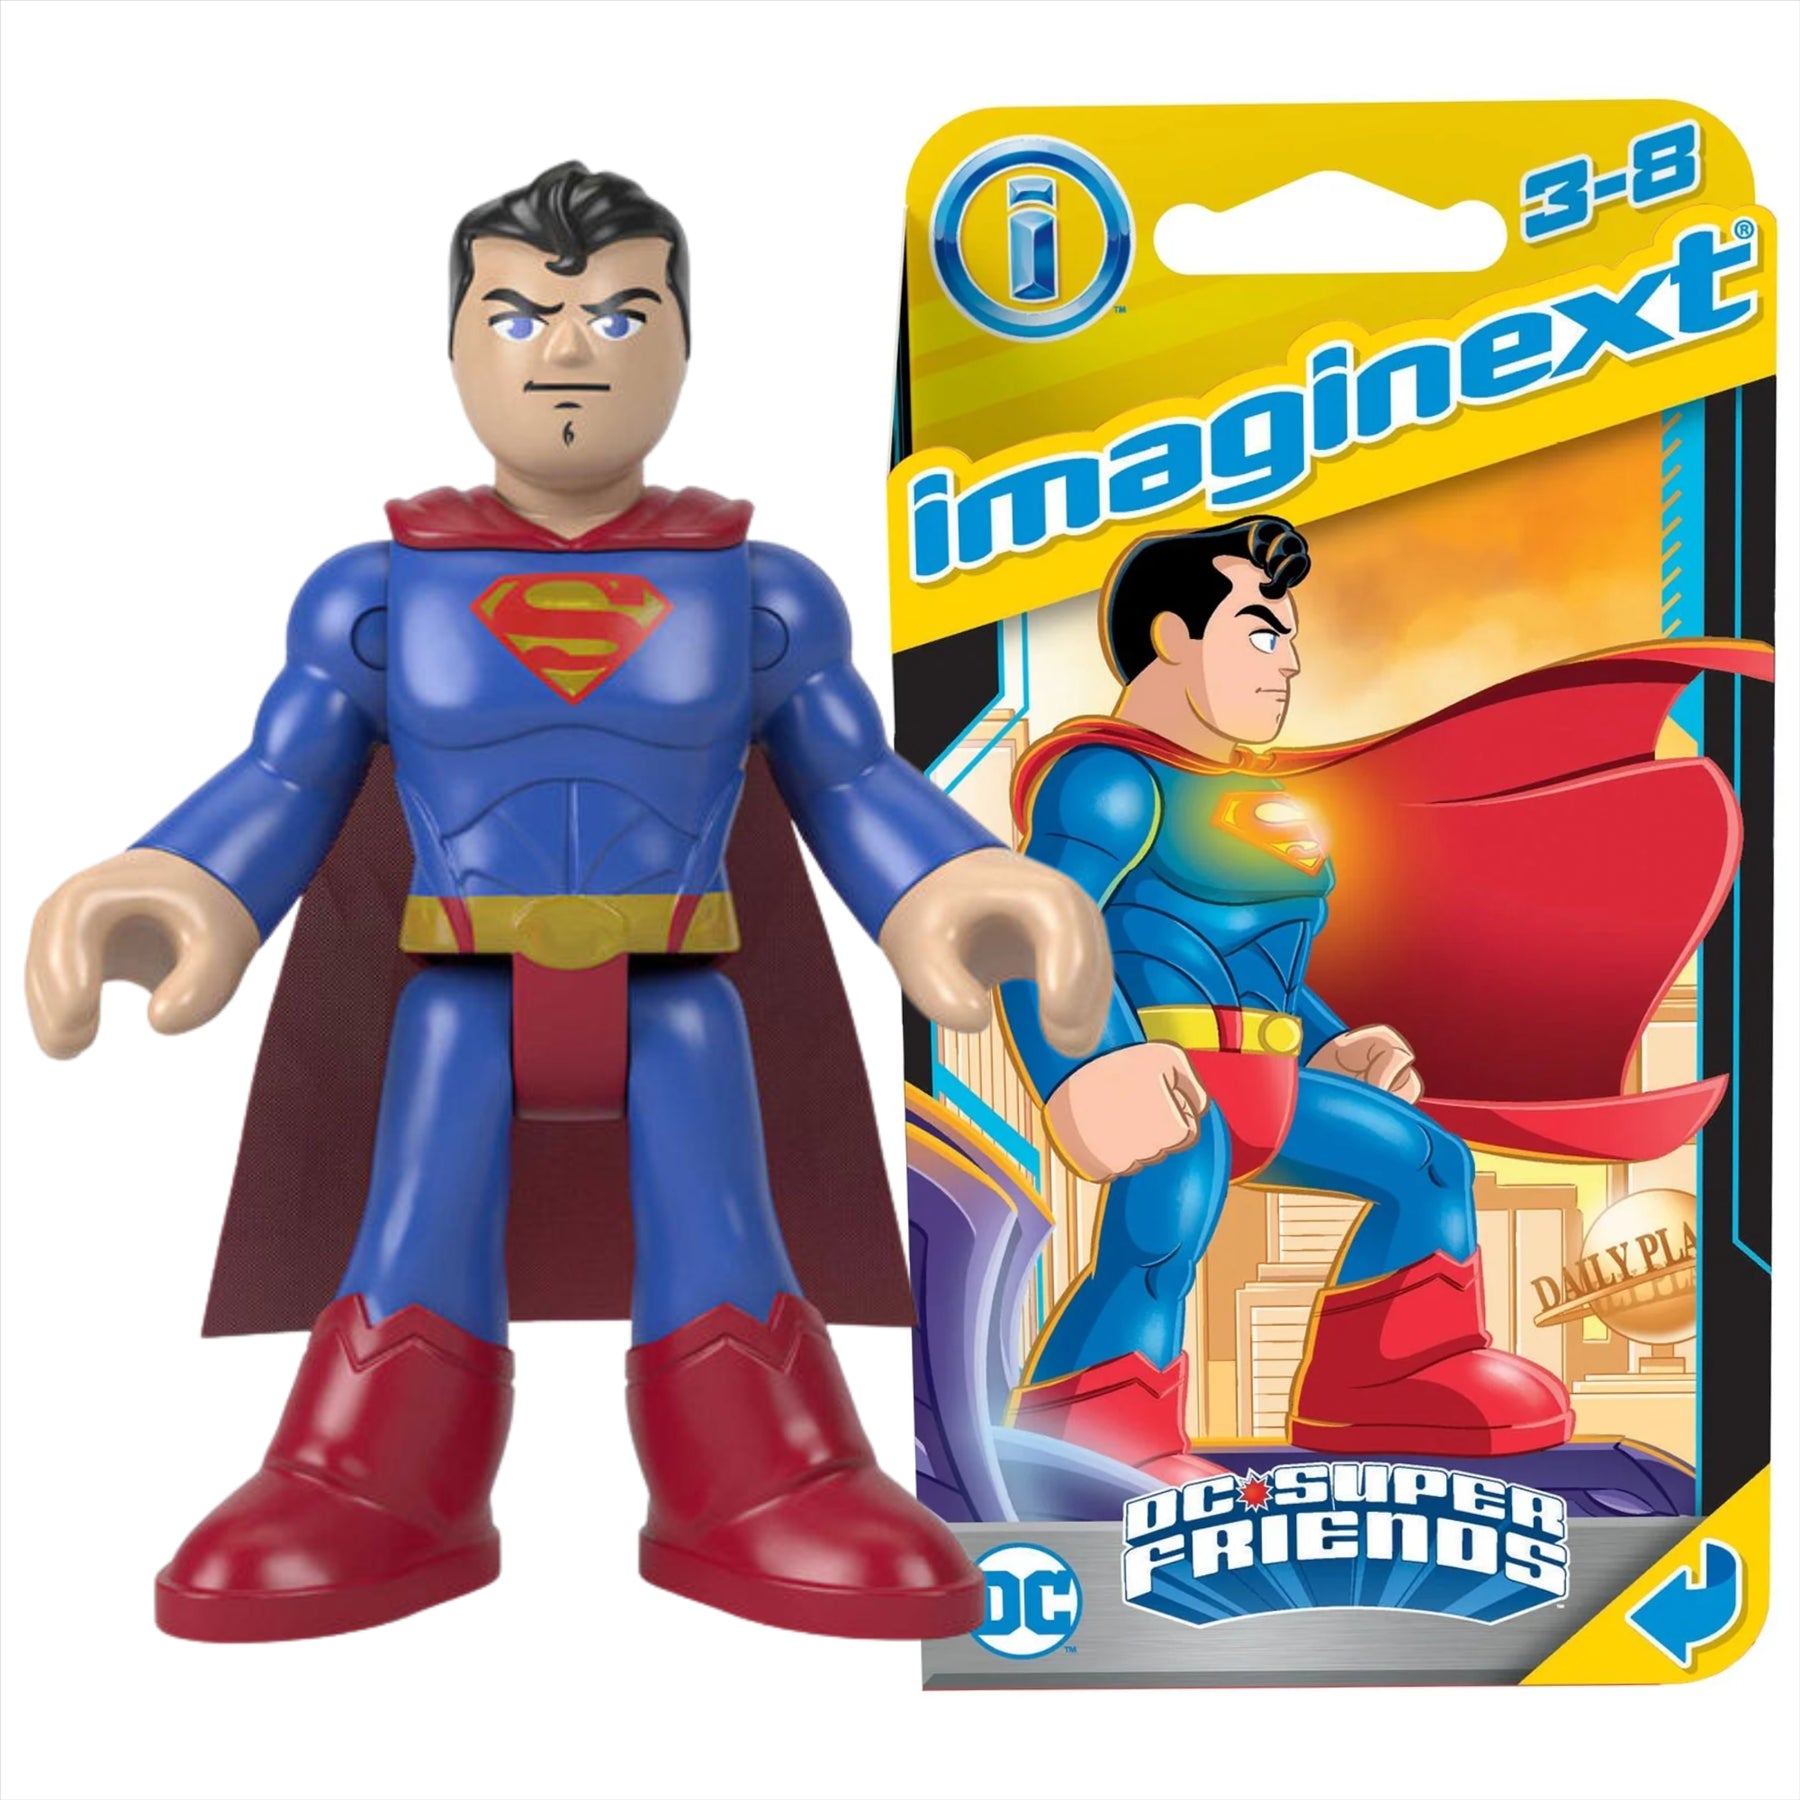 Imaginext DC Super Friends Superman Miniature Action Figure Play Toy